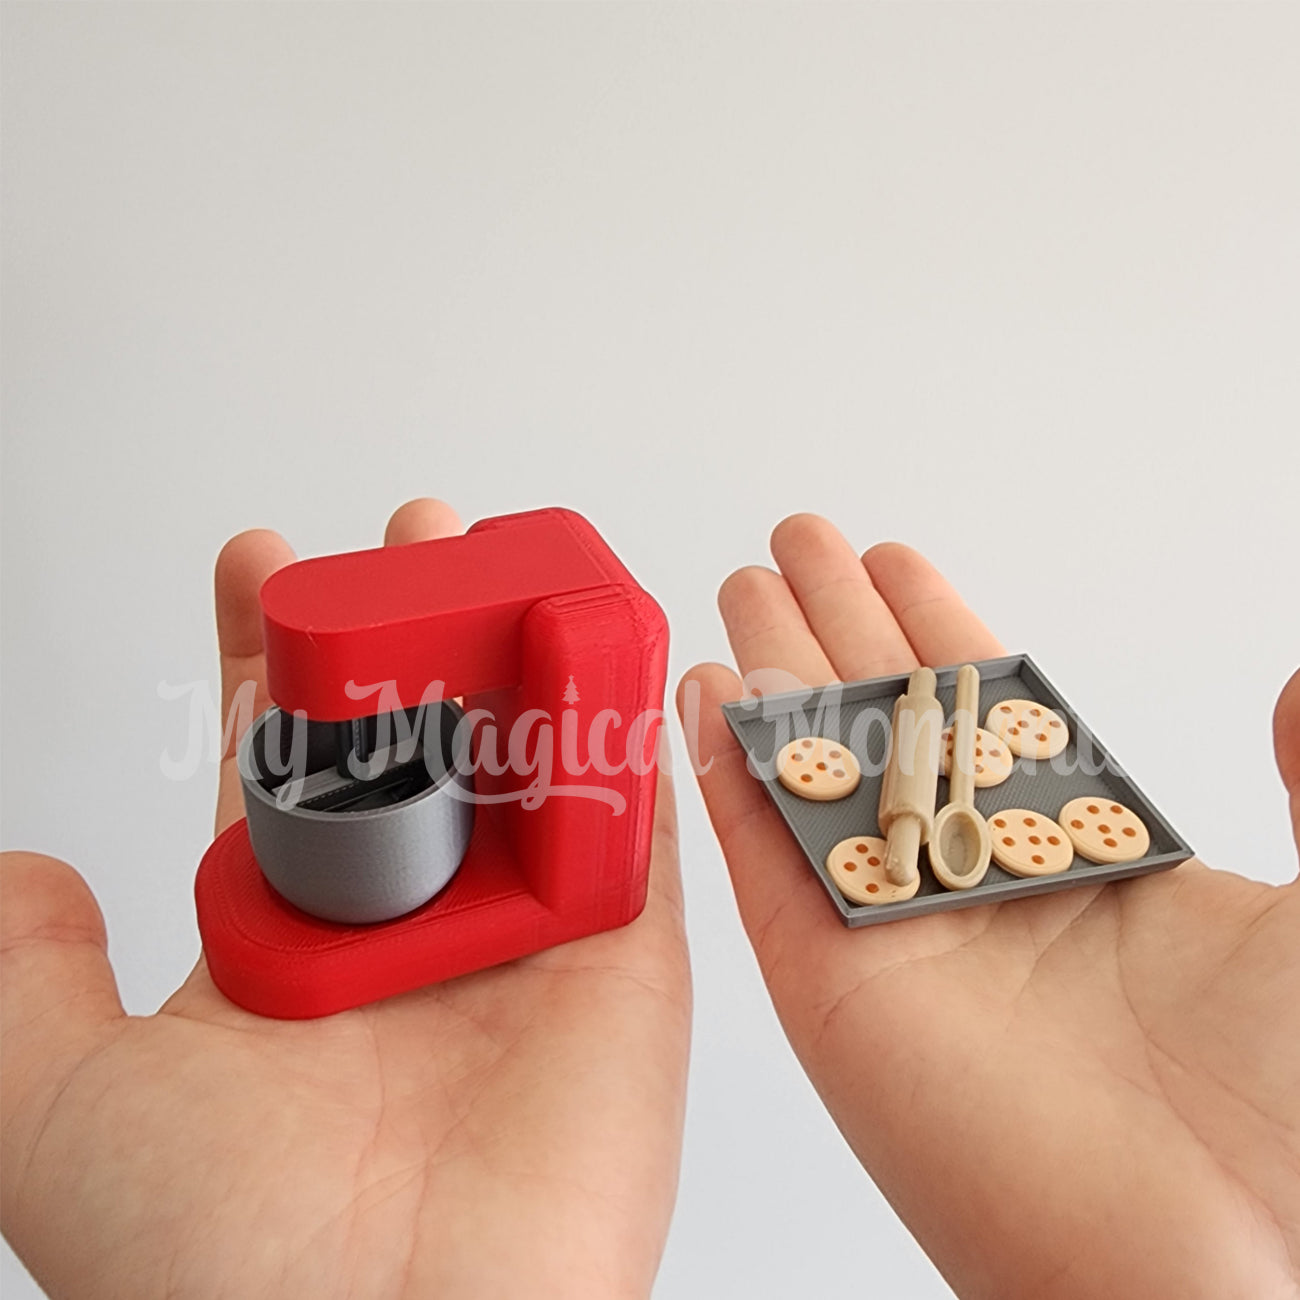 miniature Baking Set comparison to human hands